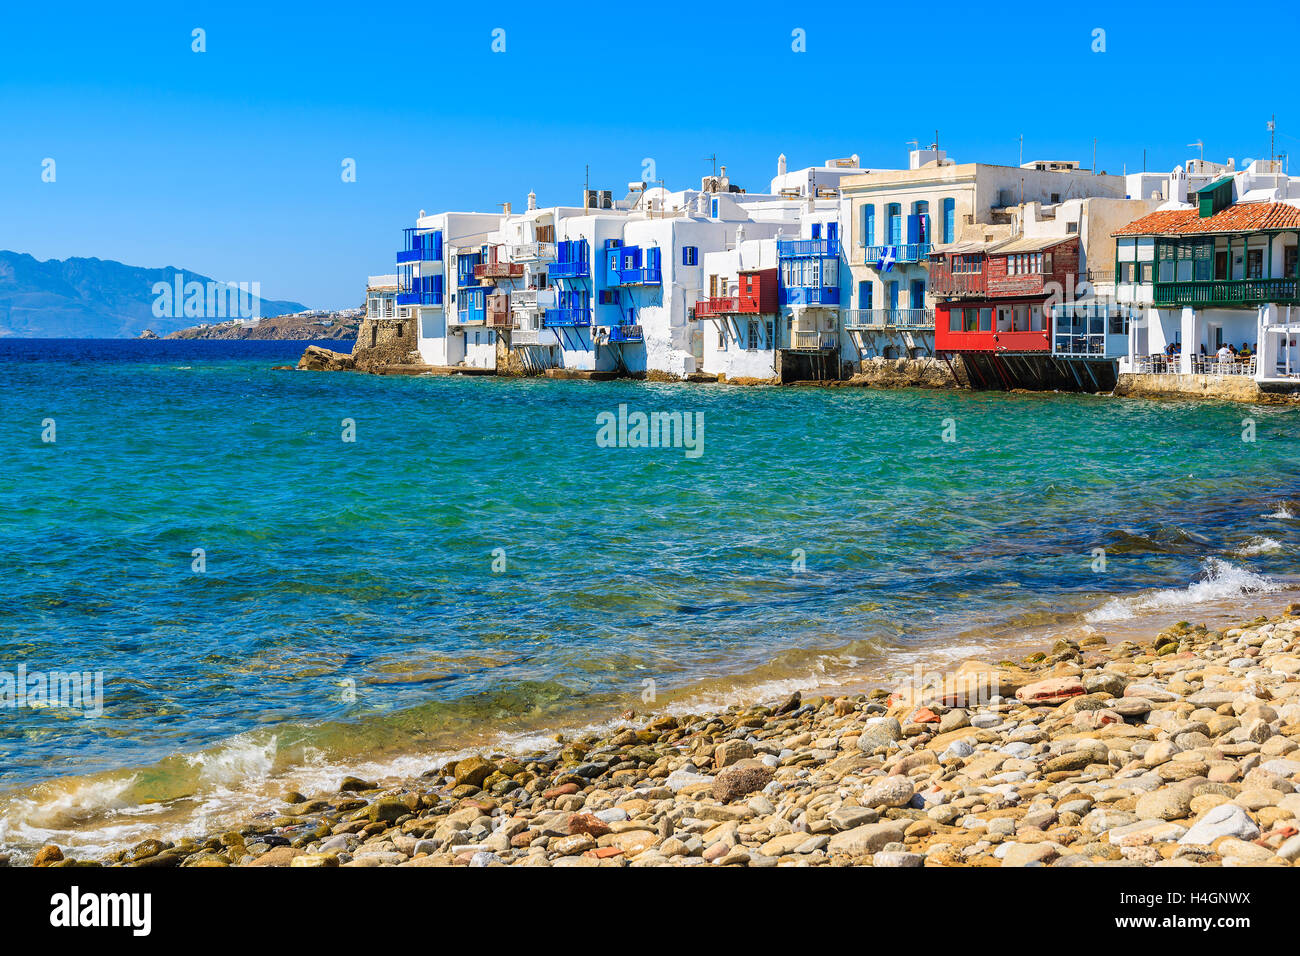 Vista de la bella playa y coloridas casas de Little Venice, parte de la ciudad de Mykonos, Grecia Foto de stock